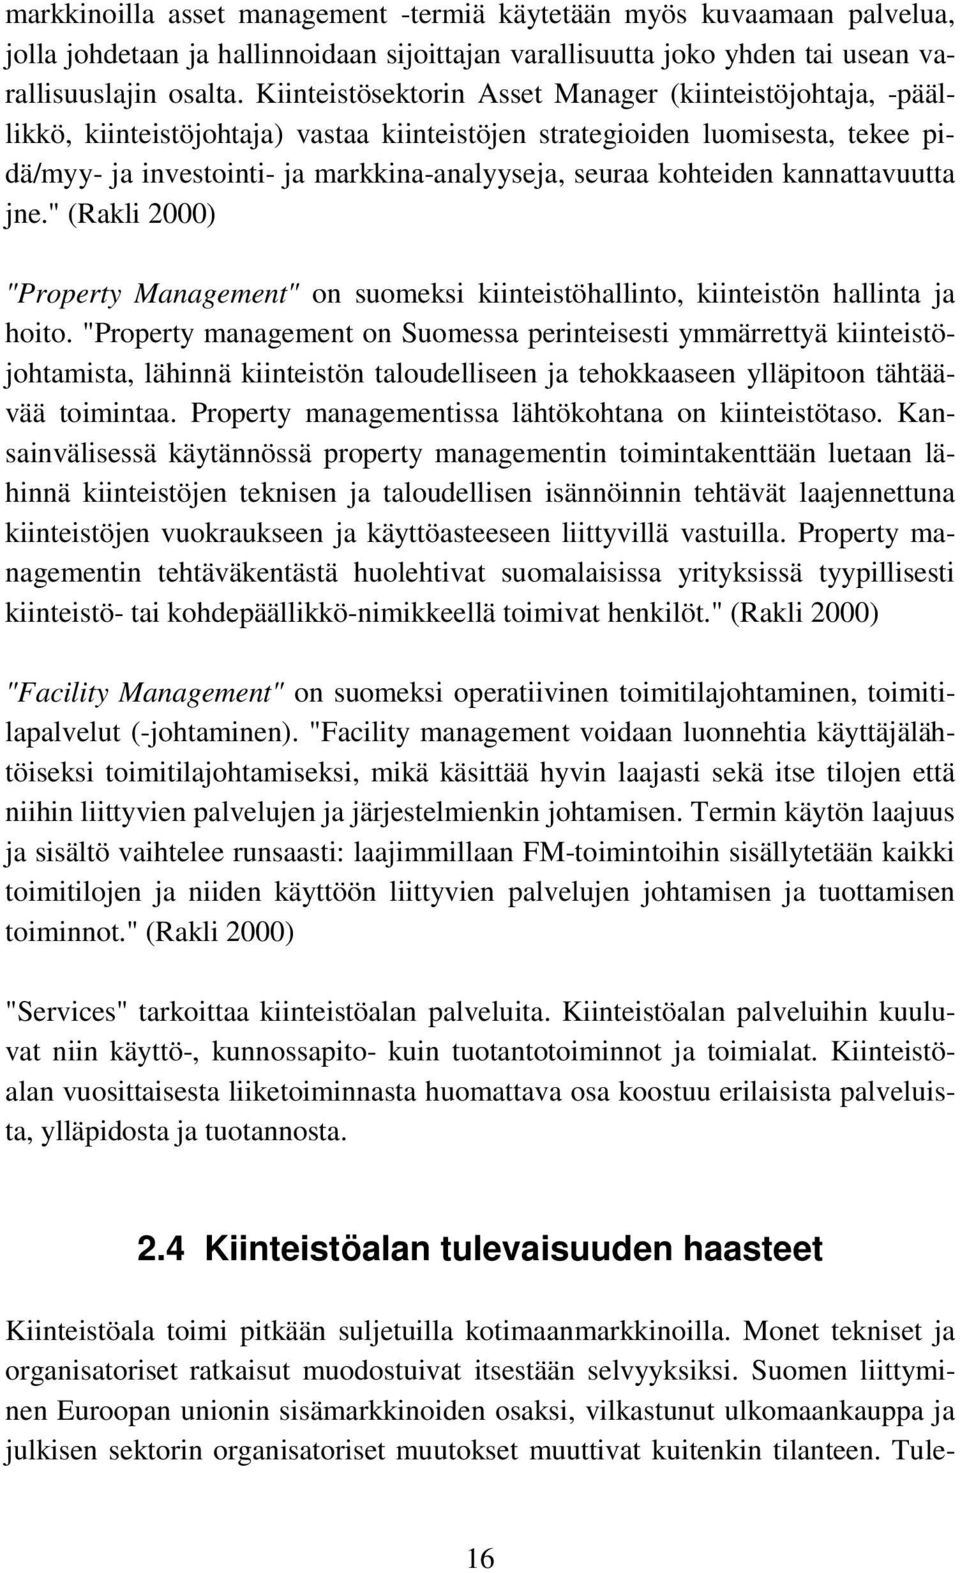 kohteiden kannattavuutta jne." (Rakli 2000) "Property Management" on suomeksi kiinteistöhallinto, kiinteistön hallinta ja hoito.